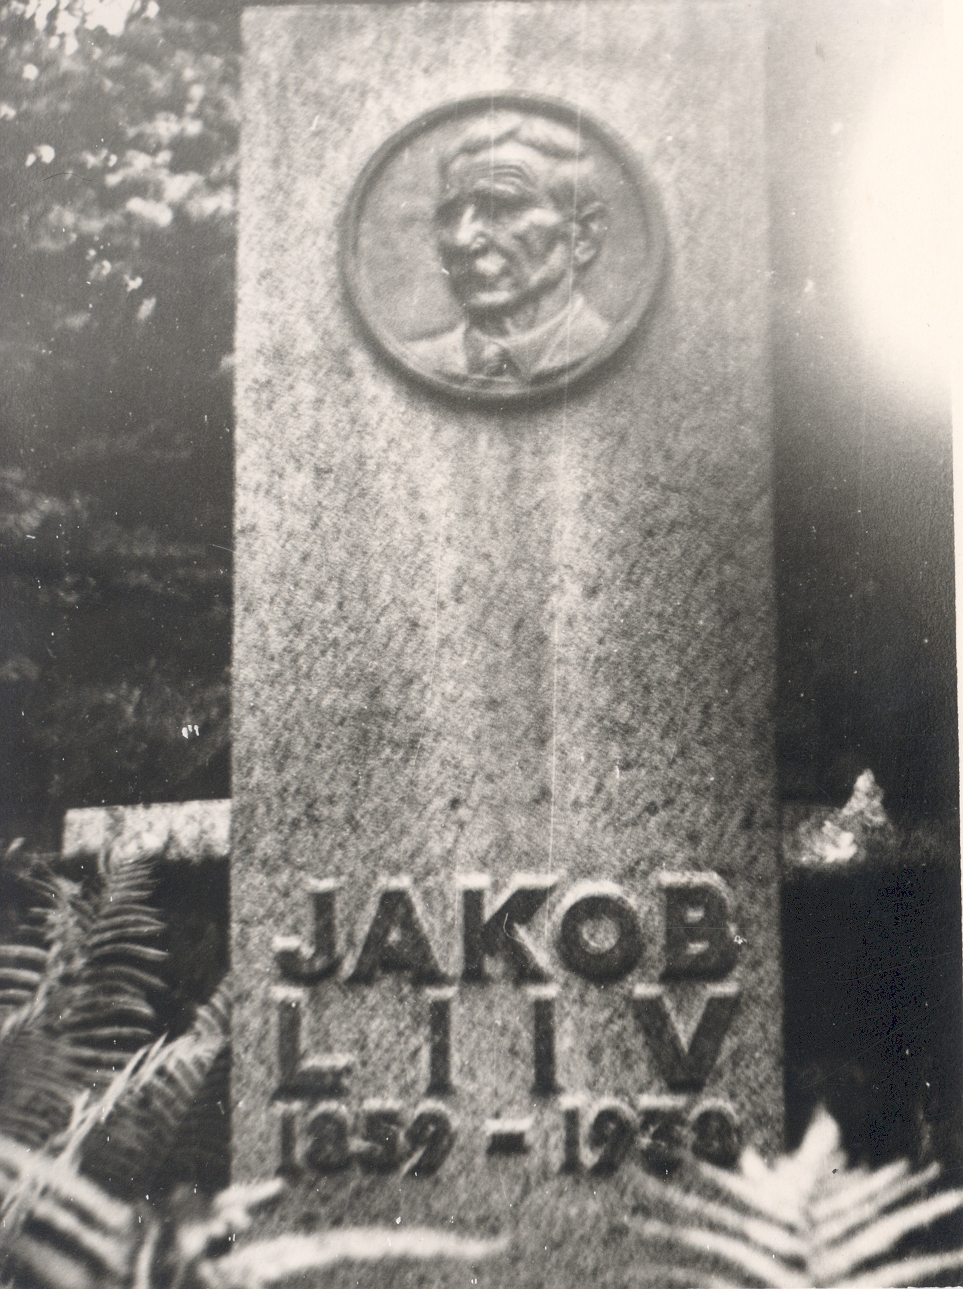 Jakob Liiv's memoir in Rakvere. 8 September 1961.